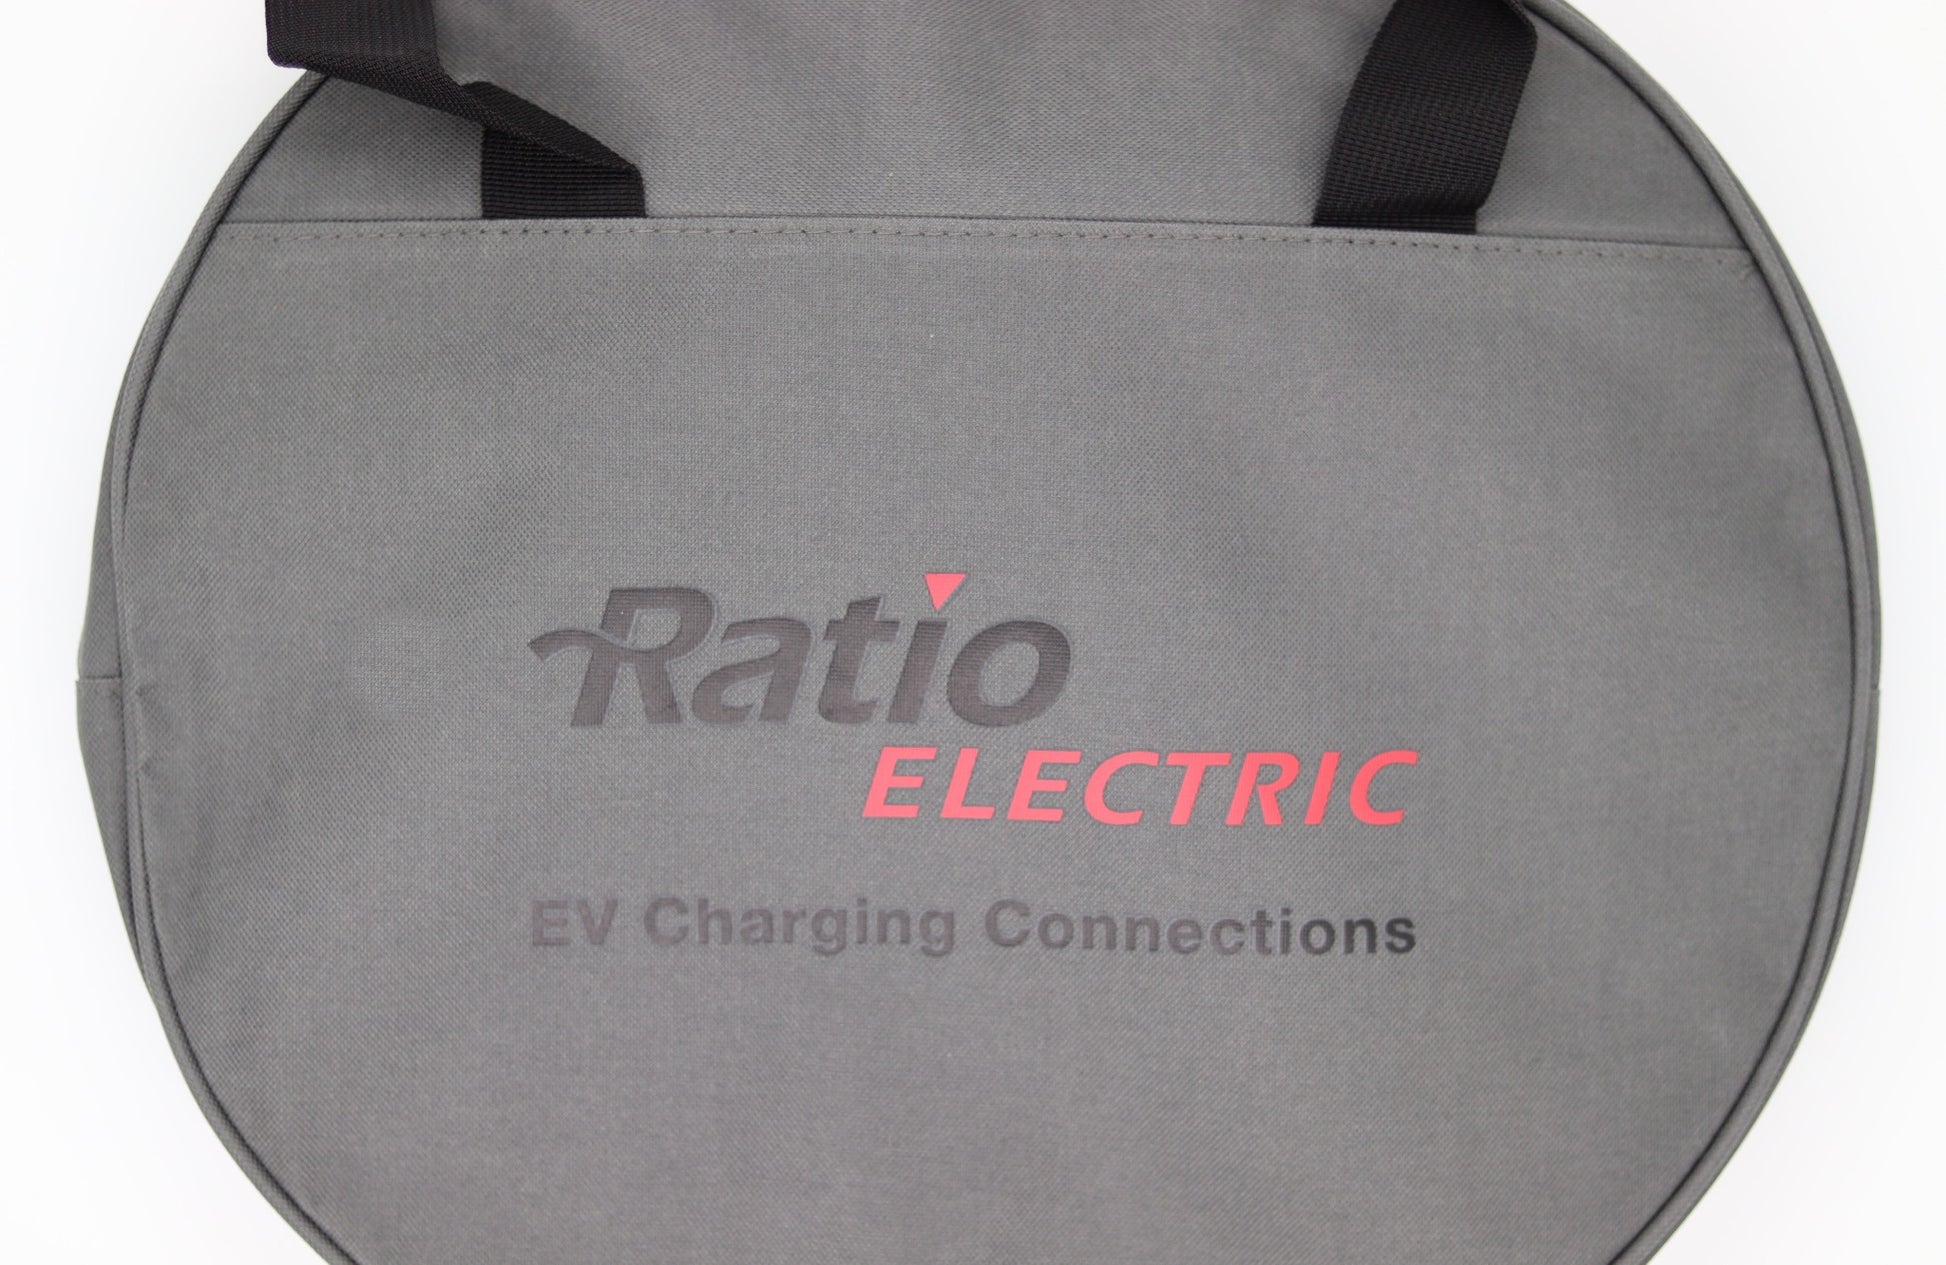 Ratio kabeltaske i grå fokus på logo